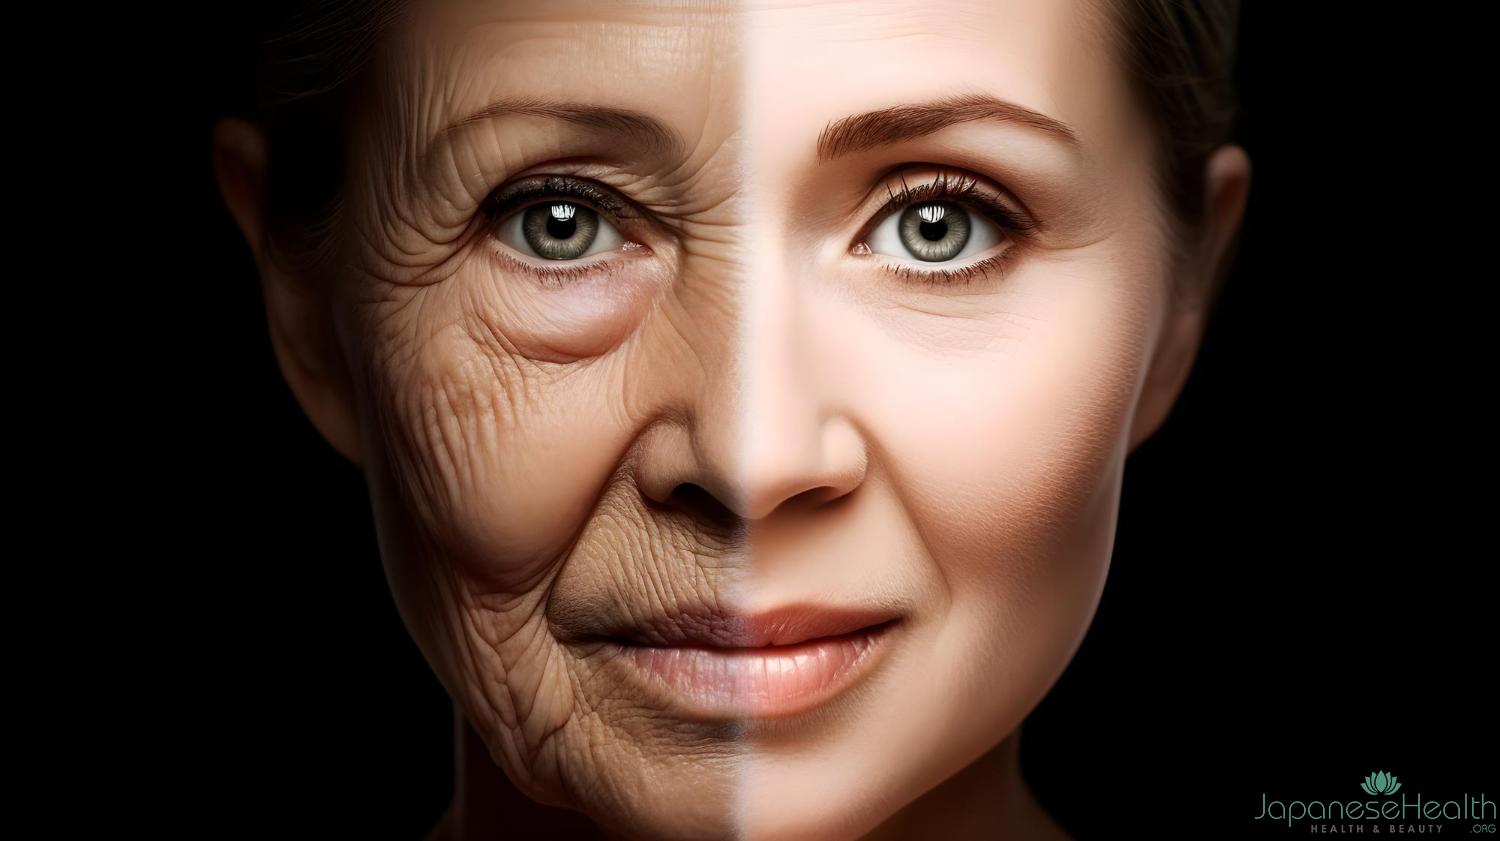 年齢とともに深くなるほうれい線は、顔全体の印象を老けて見せてしまう悩ましい存在です。